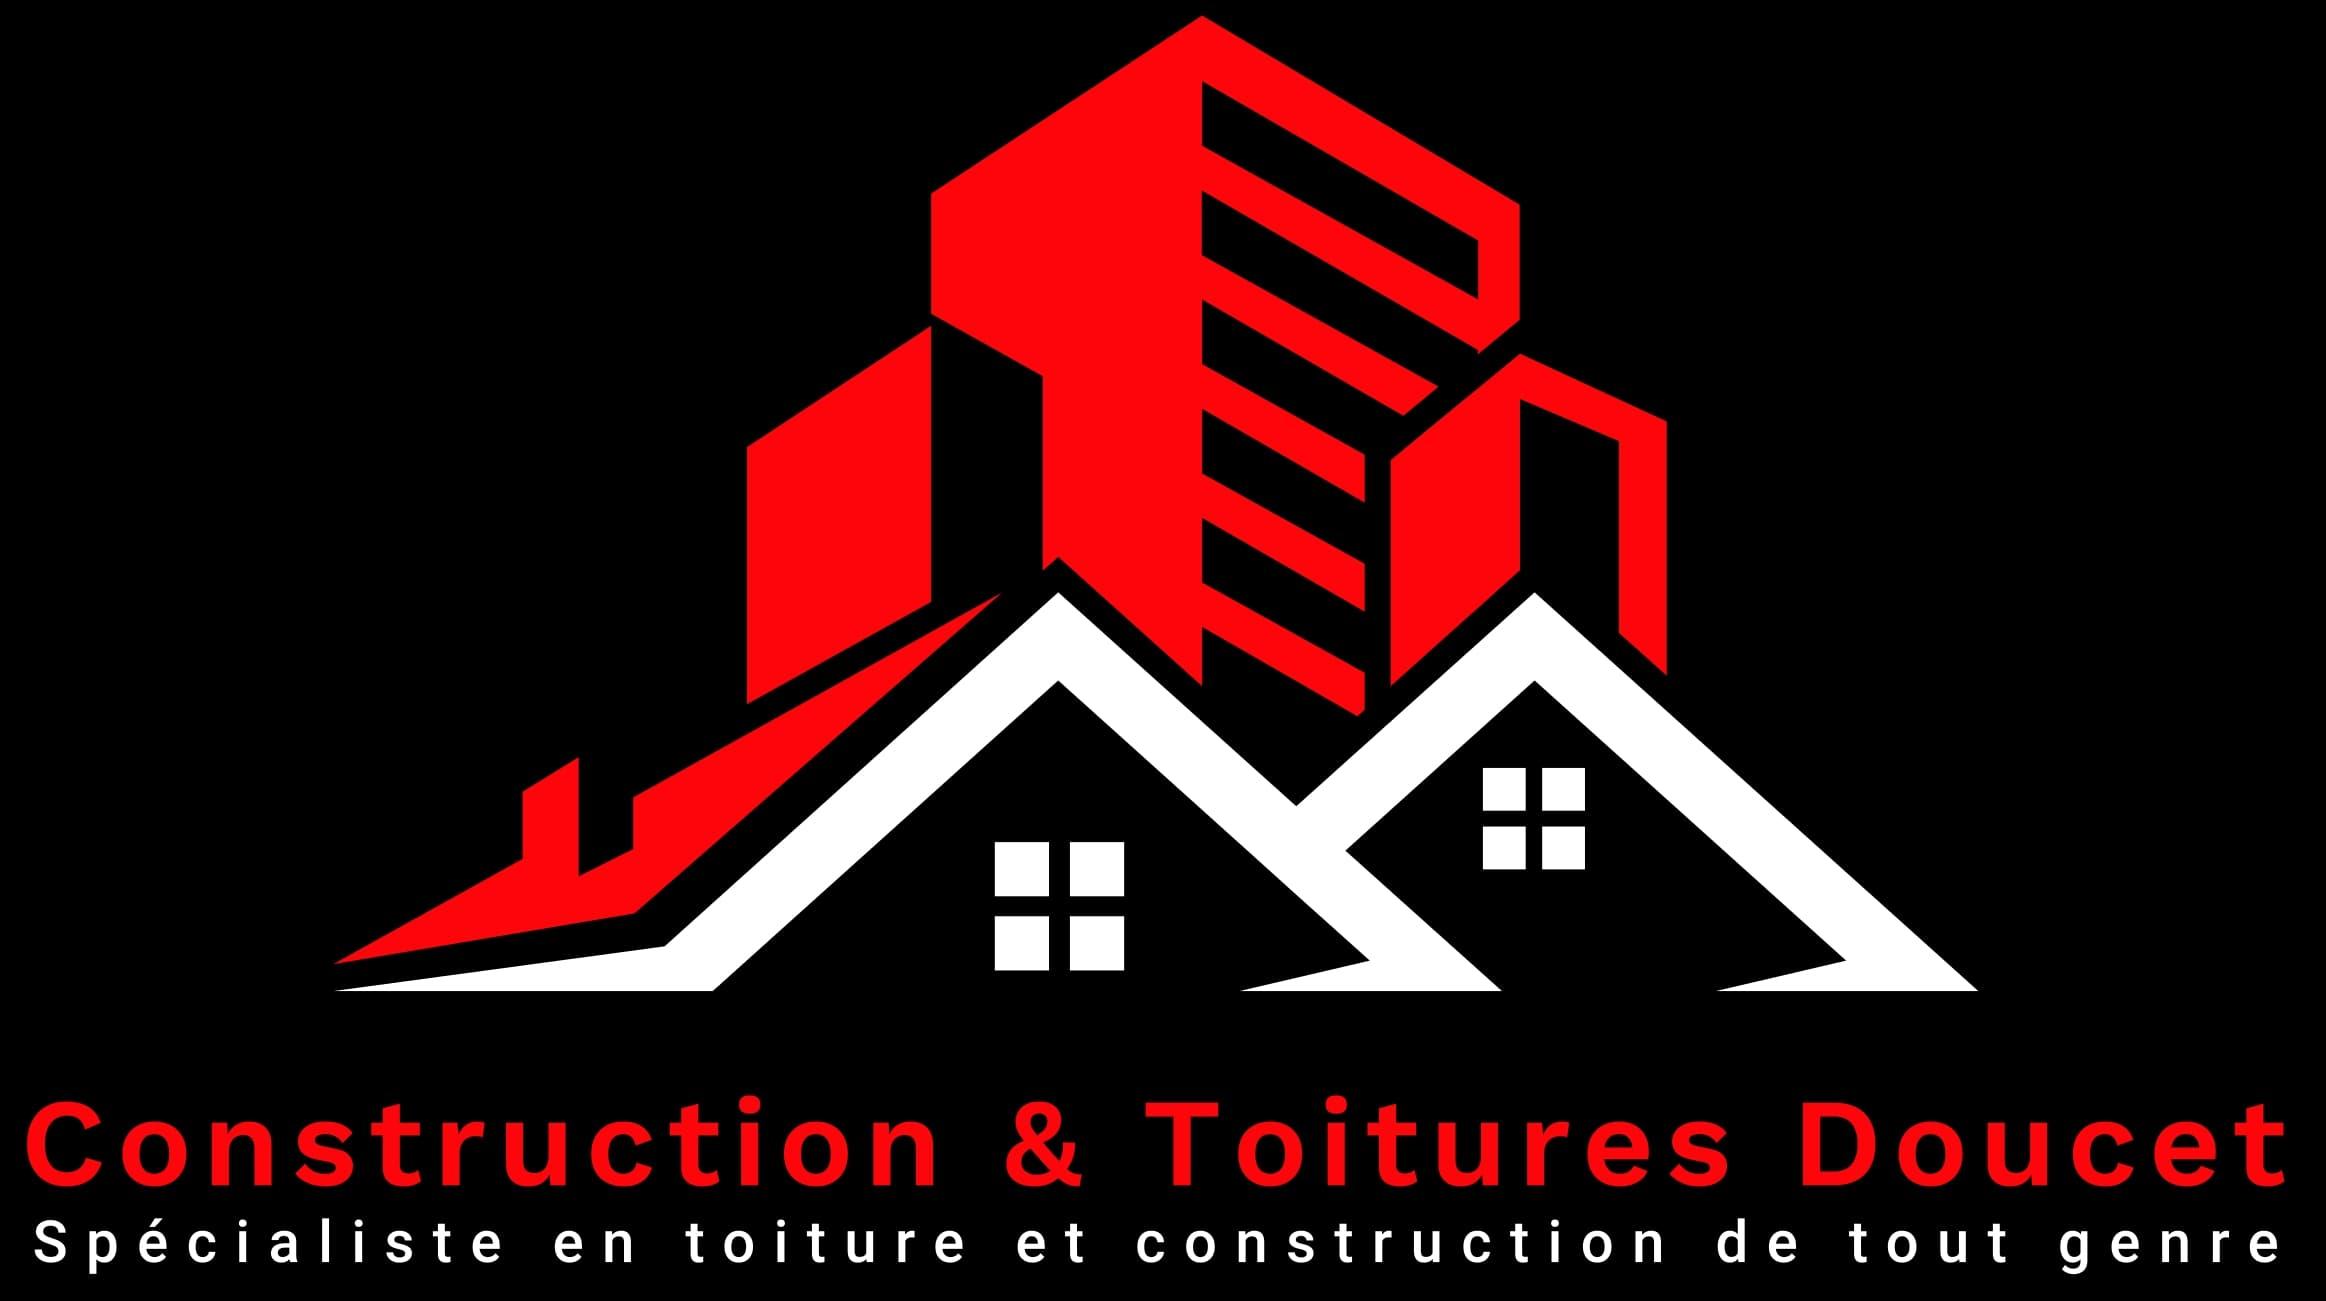 Construction & Toitures Doucet